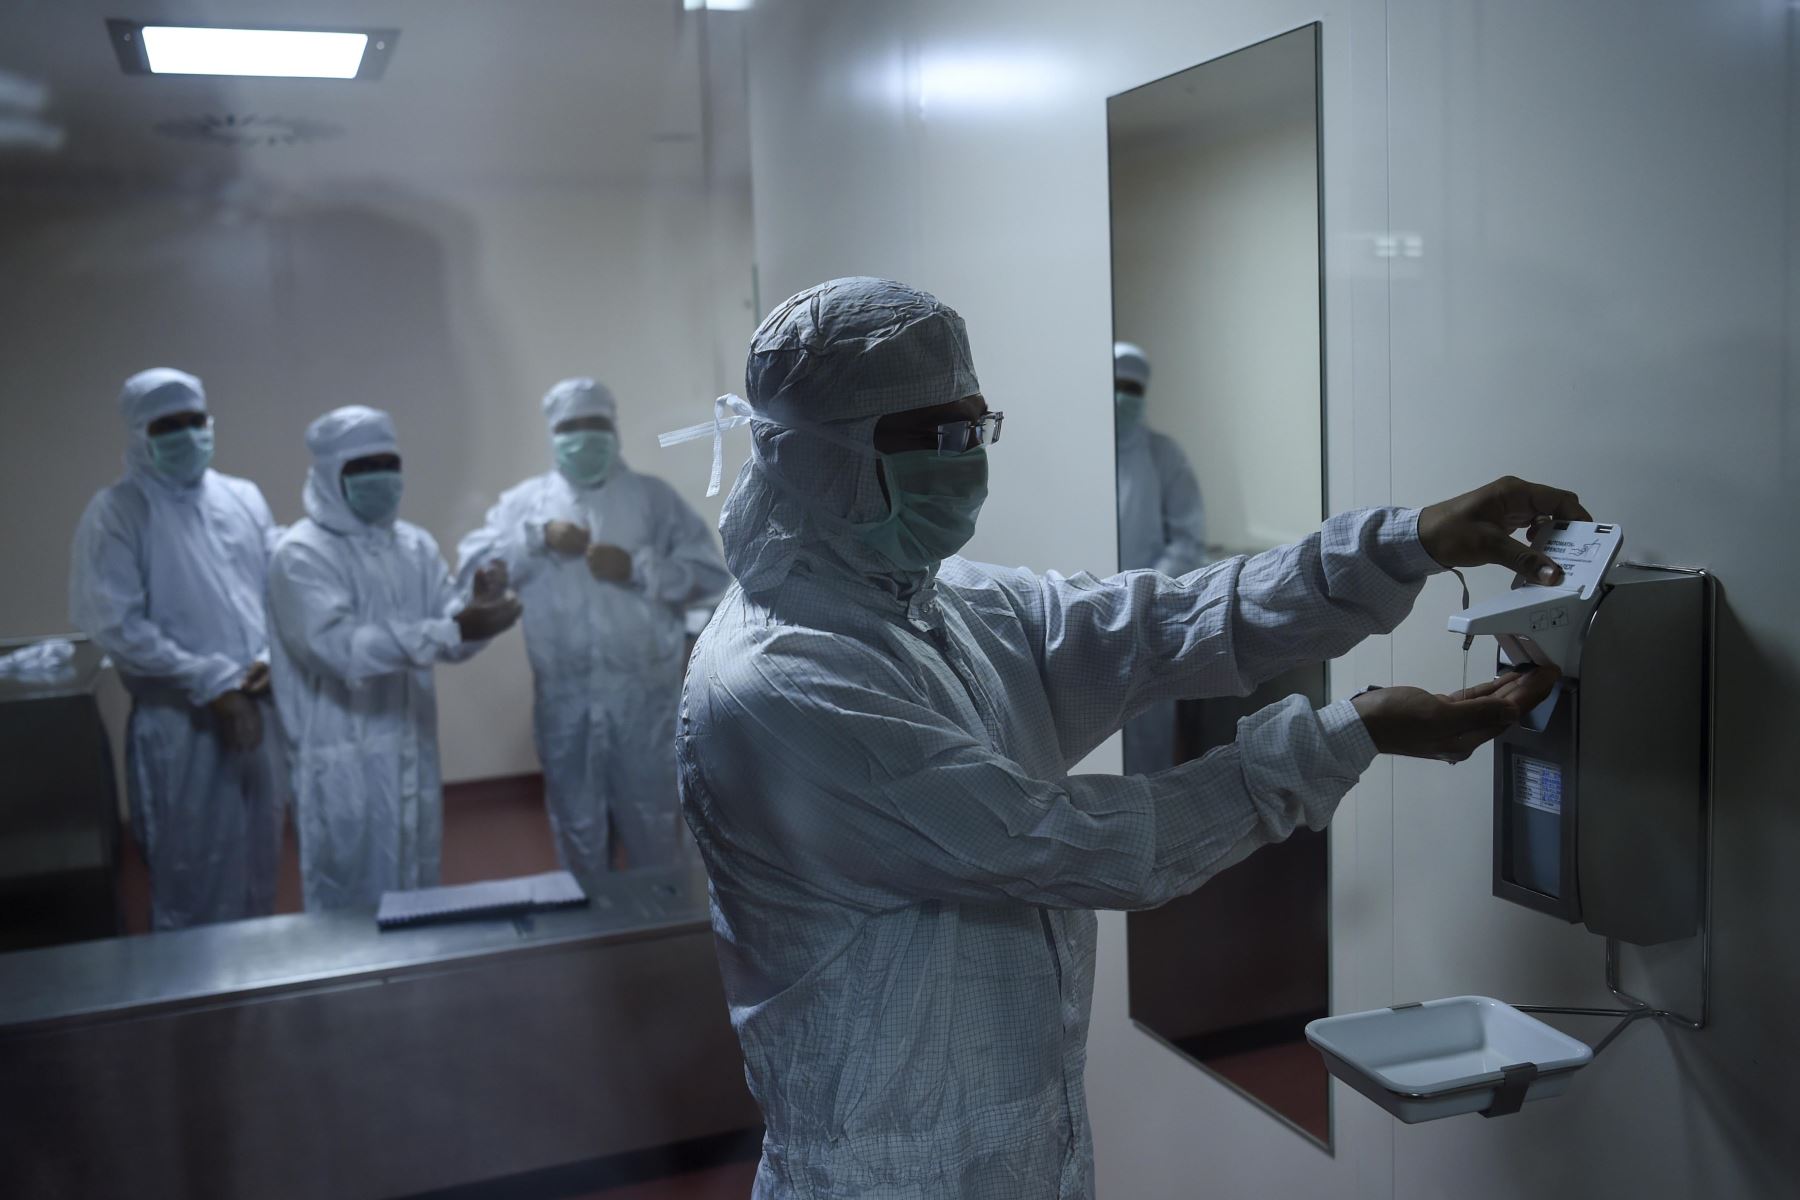 Los empleados se preparan antes de ingresar al laboratorio donde se fabrica Covishield, la vacuna de coronavirus Covid-19 de AstraZeneca-Oxford, en el Serum Institute de India.
Foto : AFP